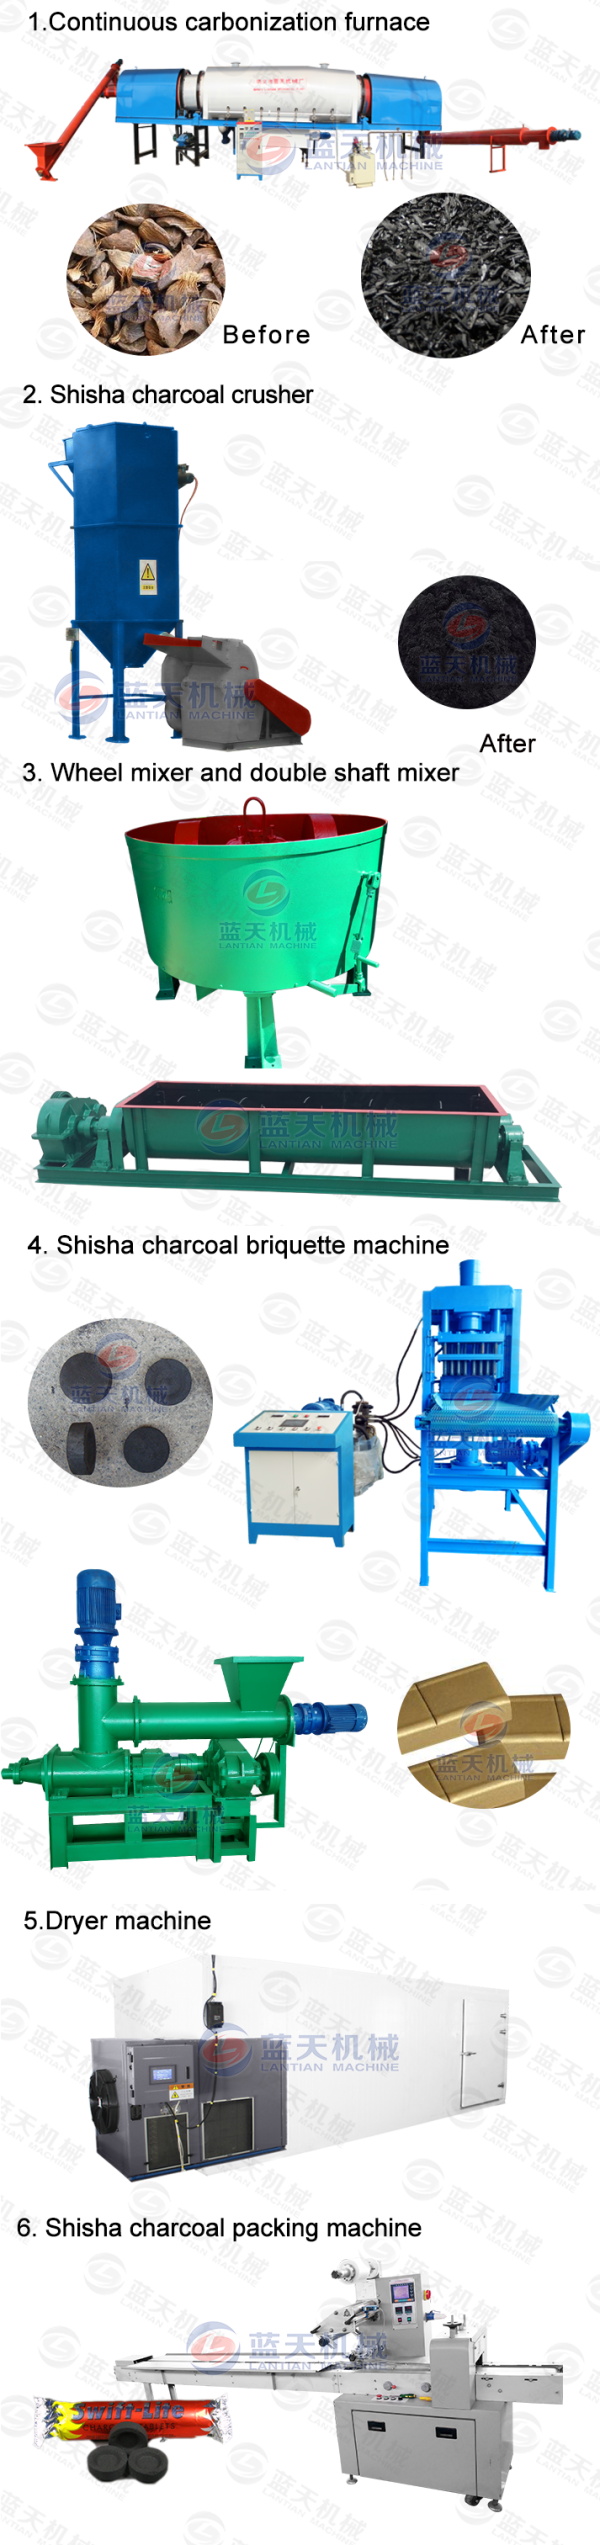 shisha charcoal drying machine